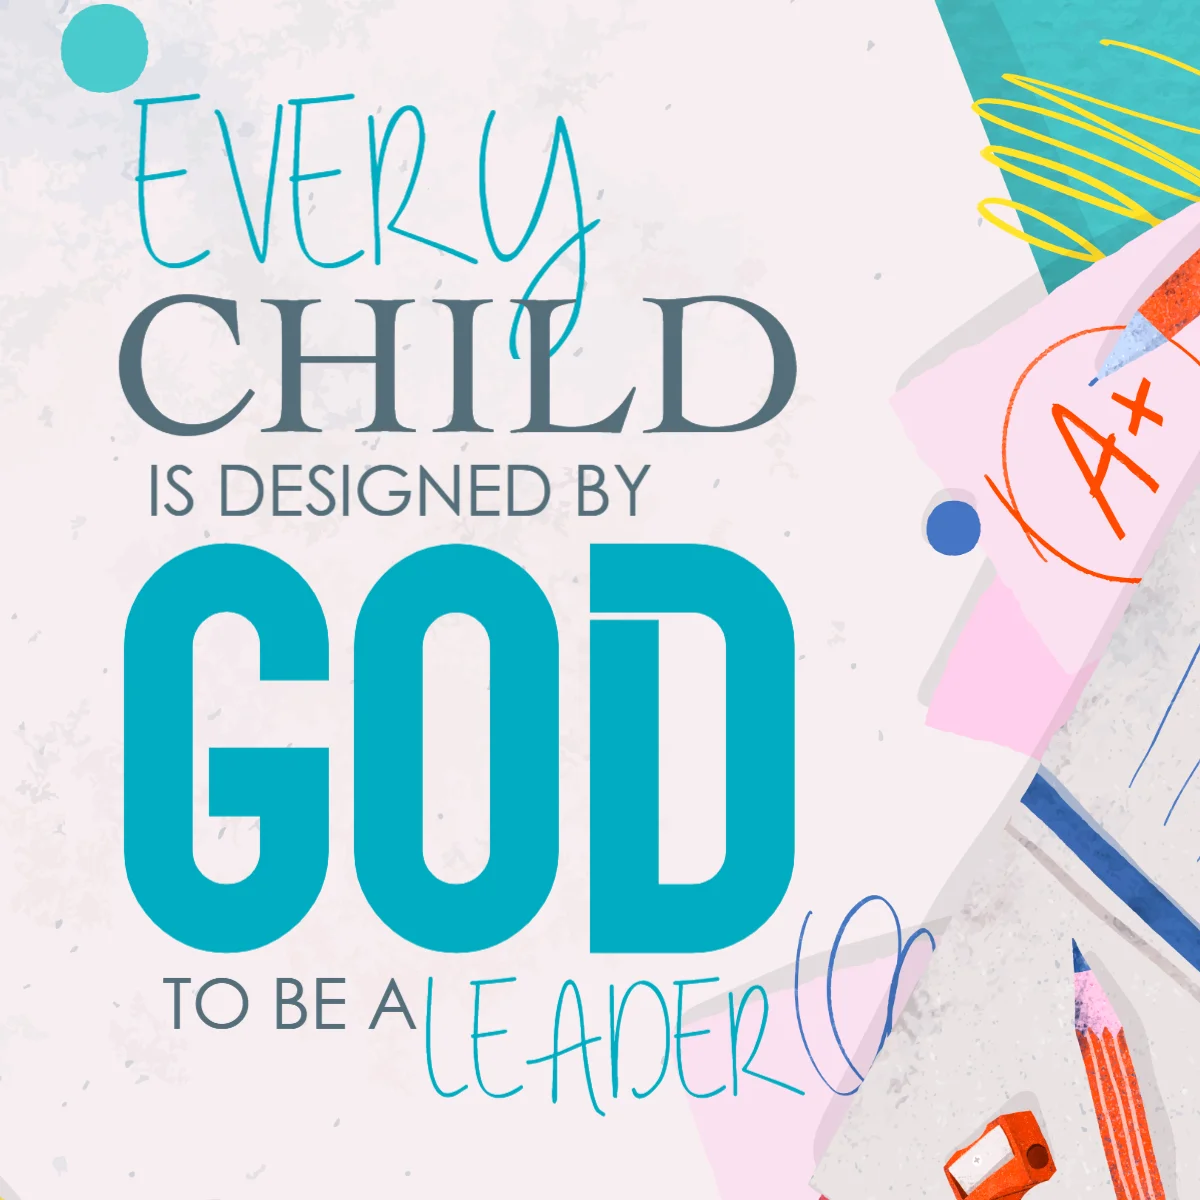 ہر بچے کو خدا کے ذریعہ ڈیزائن کیا گیا ہے اعلی معیار کے چلڈرن چرچ گرافکس مفت میں منسٹری وائس کے ذریعہ